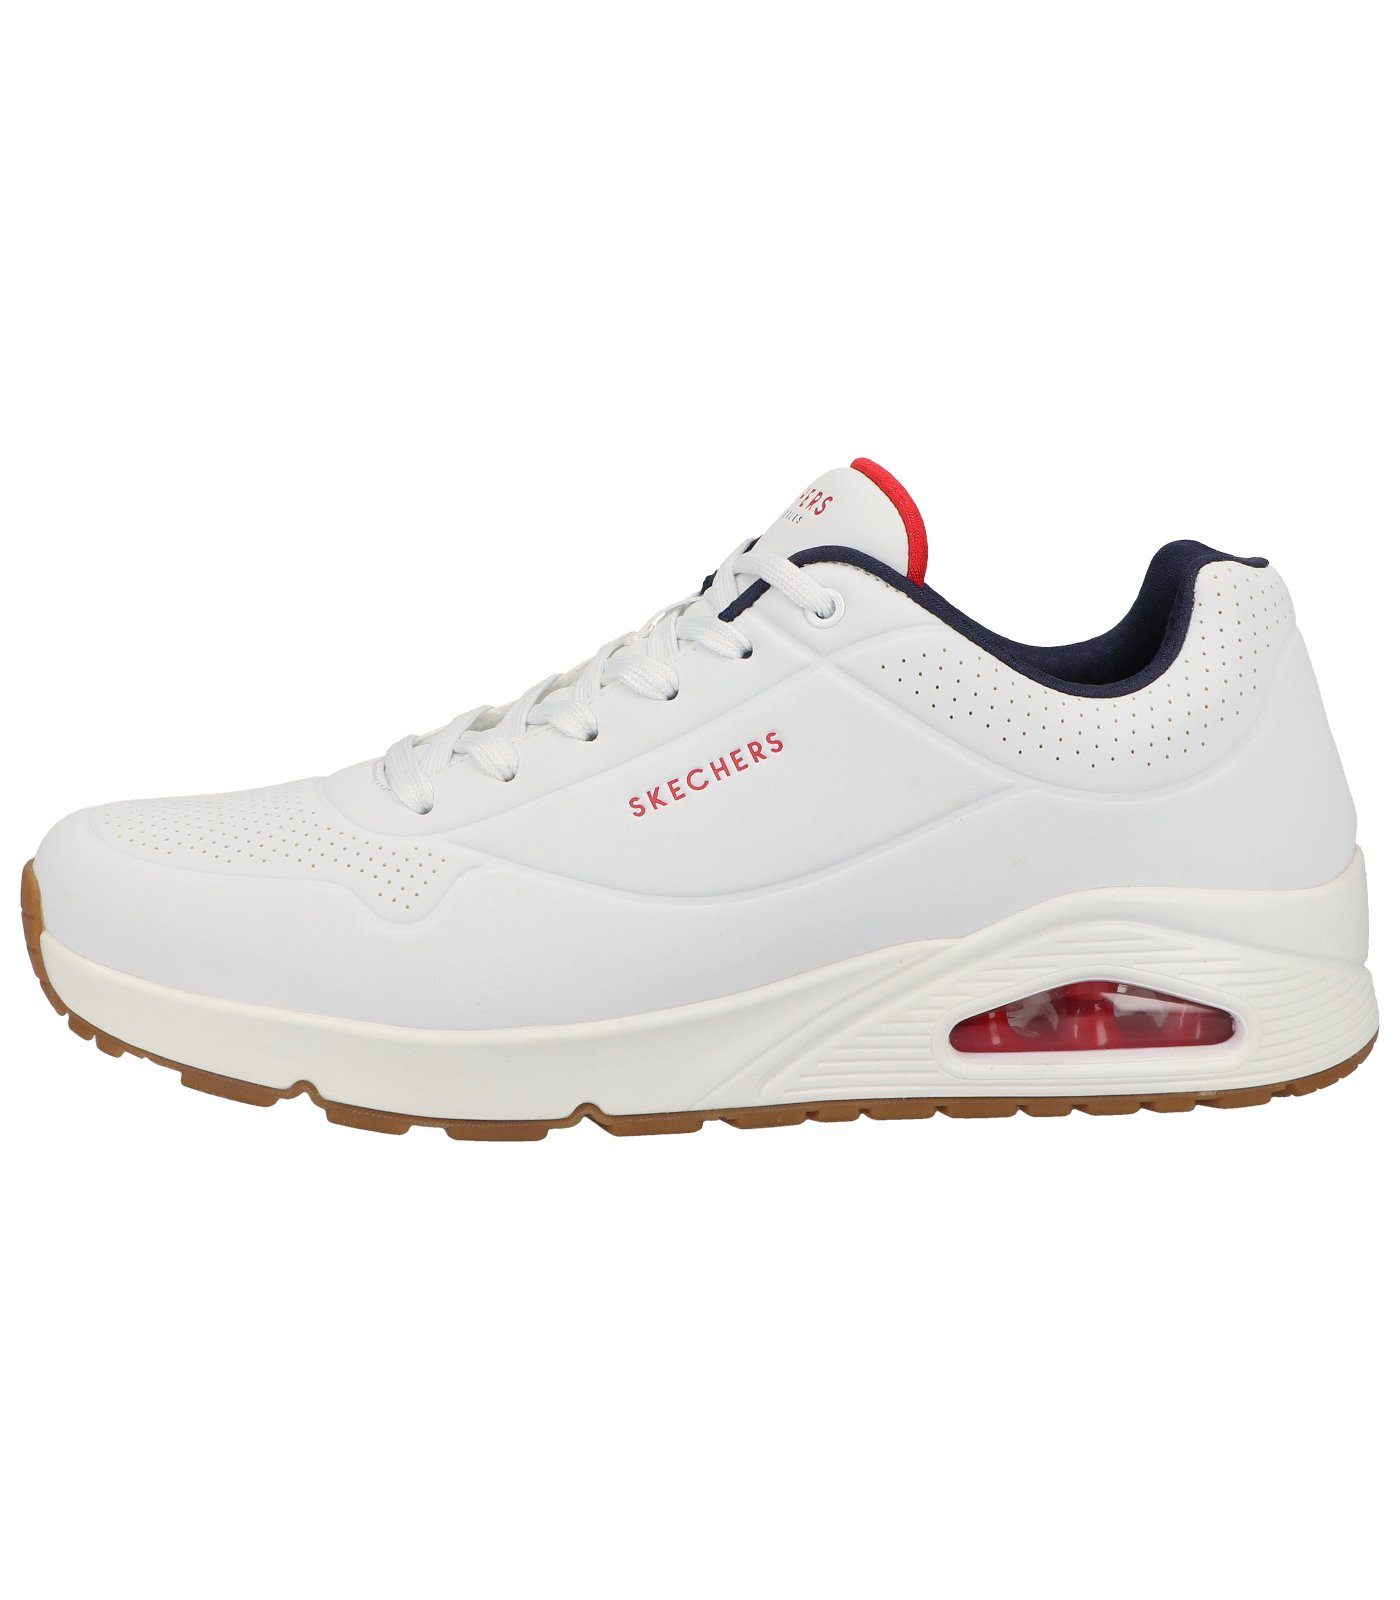 Lederimitat Sneaker Sneaker Skechers white/navy/red